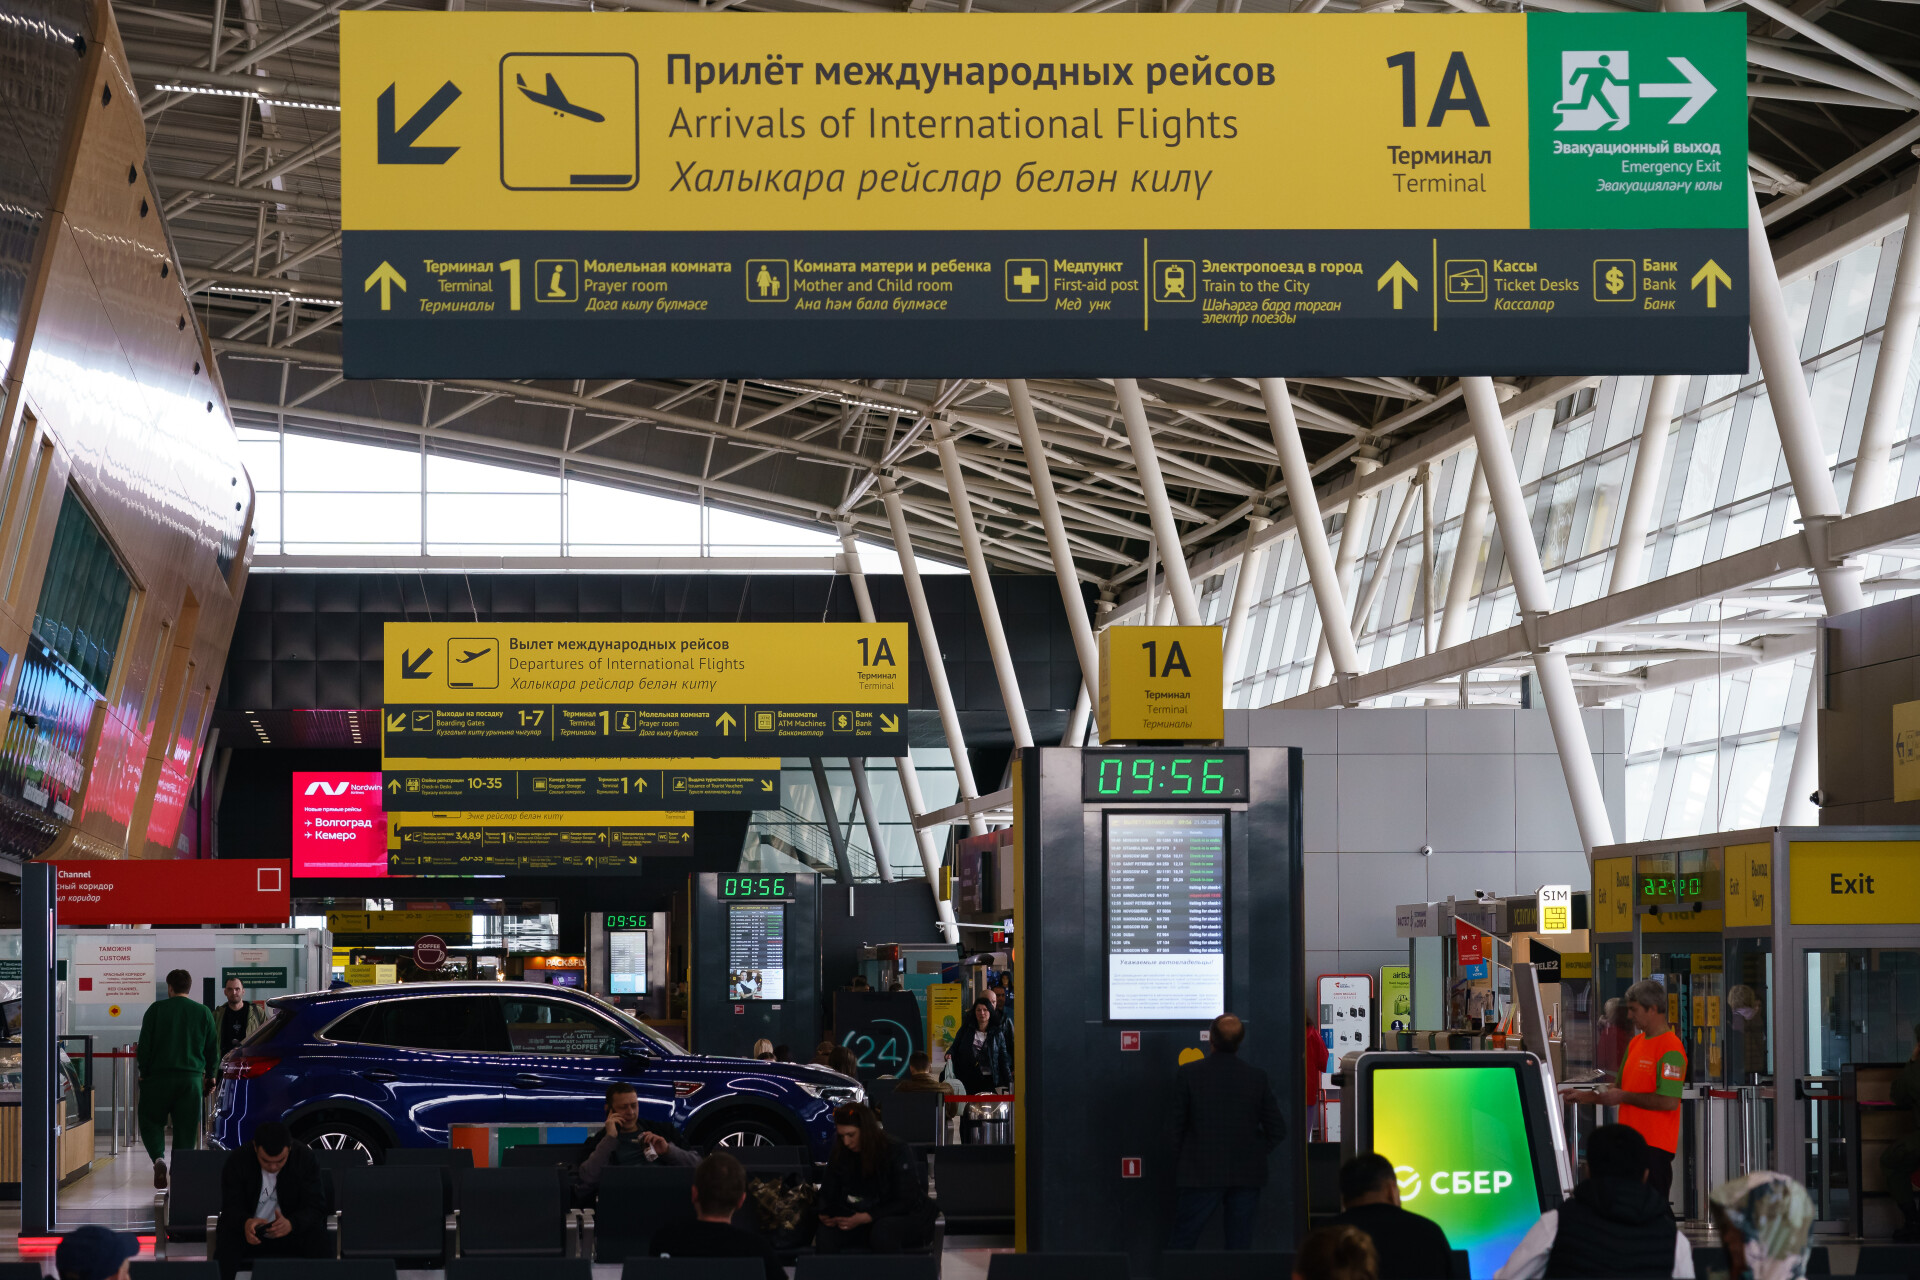 Самолеты, направляющиеся в Казань, временно перенаправлены в Нижнекамск и Самару